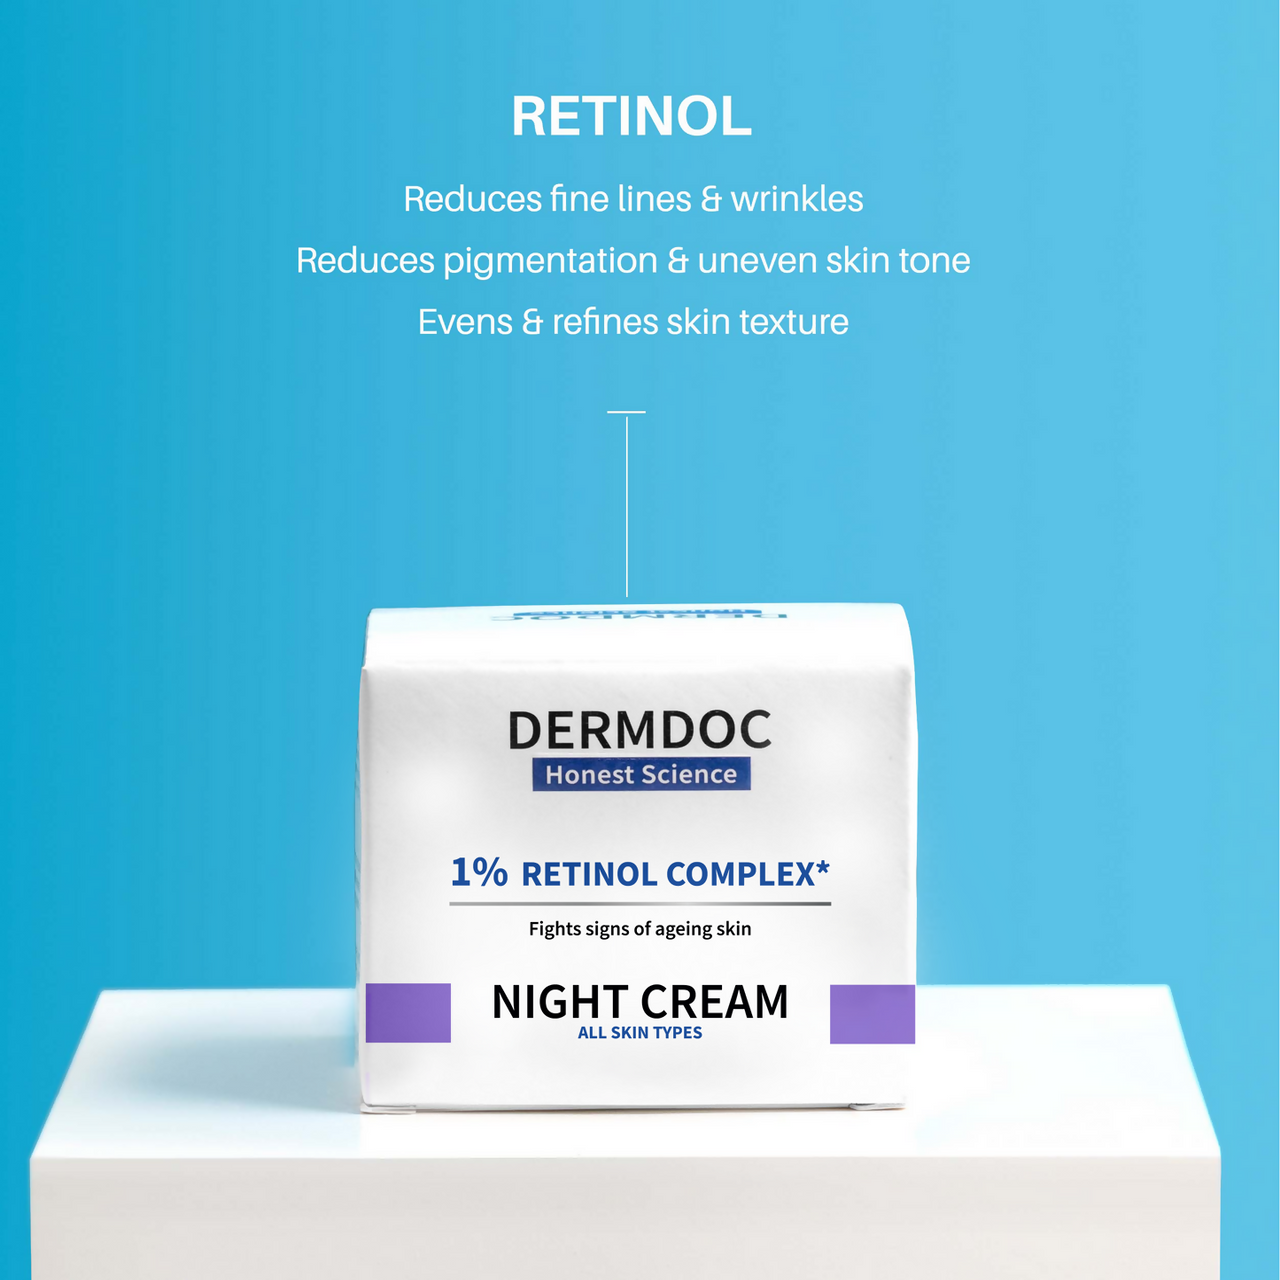 Dermdoc 1% Retinol Complex Night Cream - Distacart